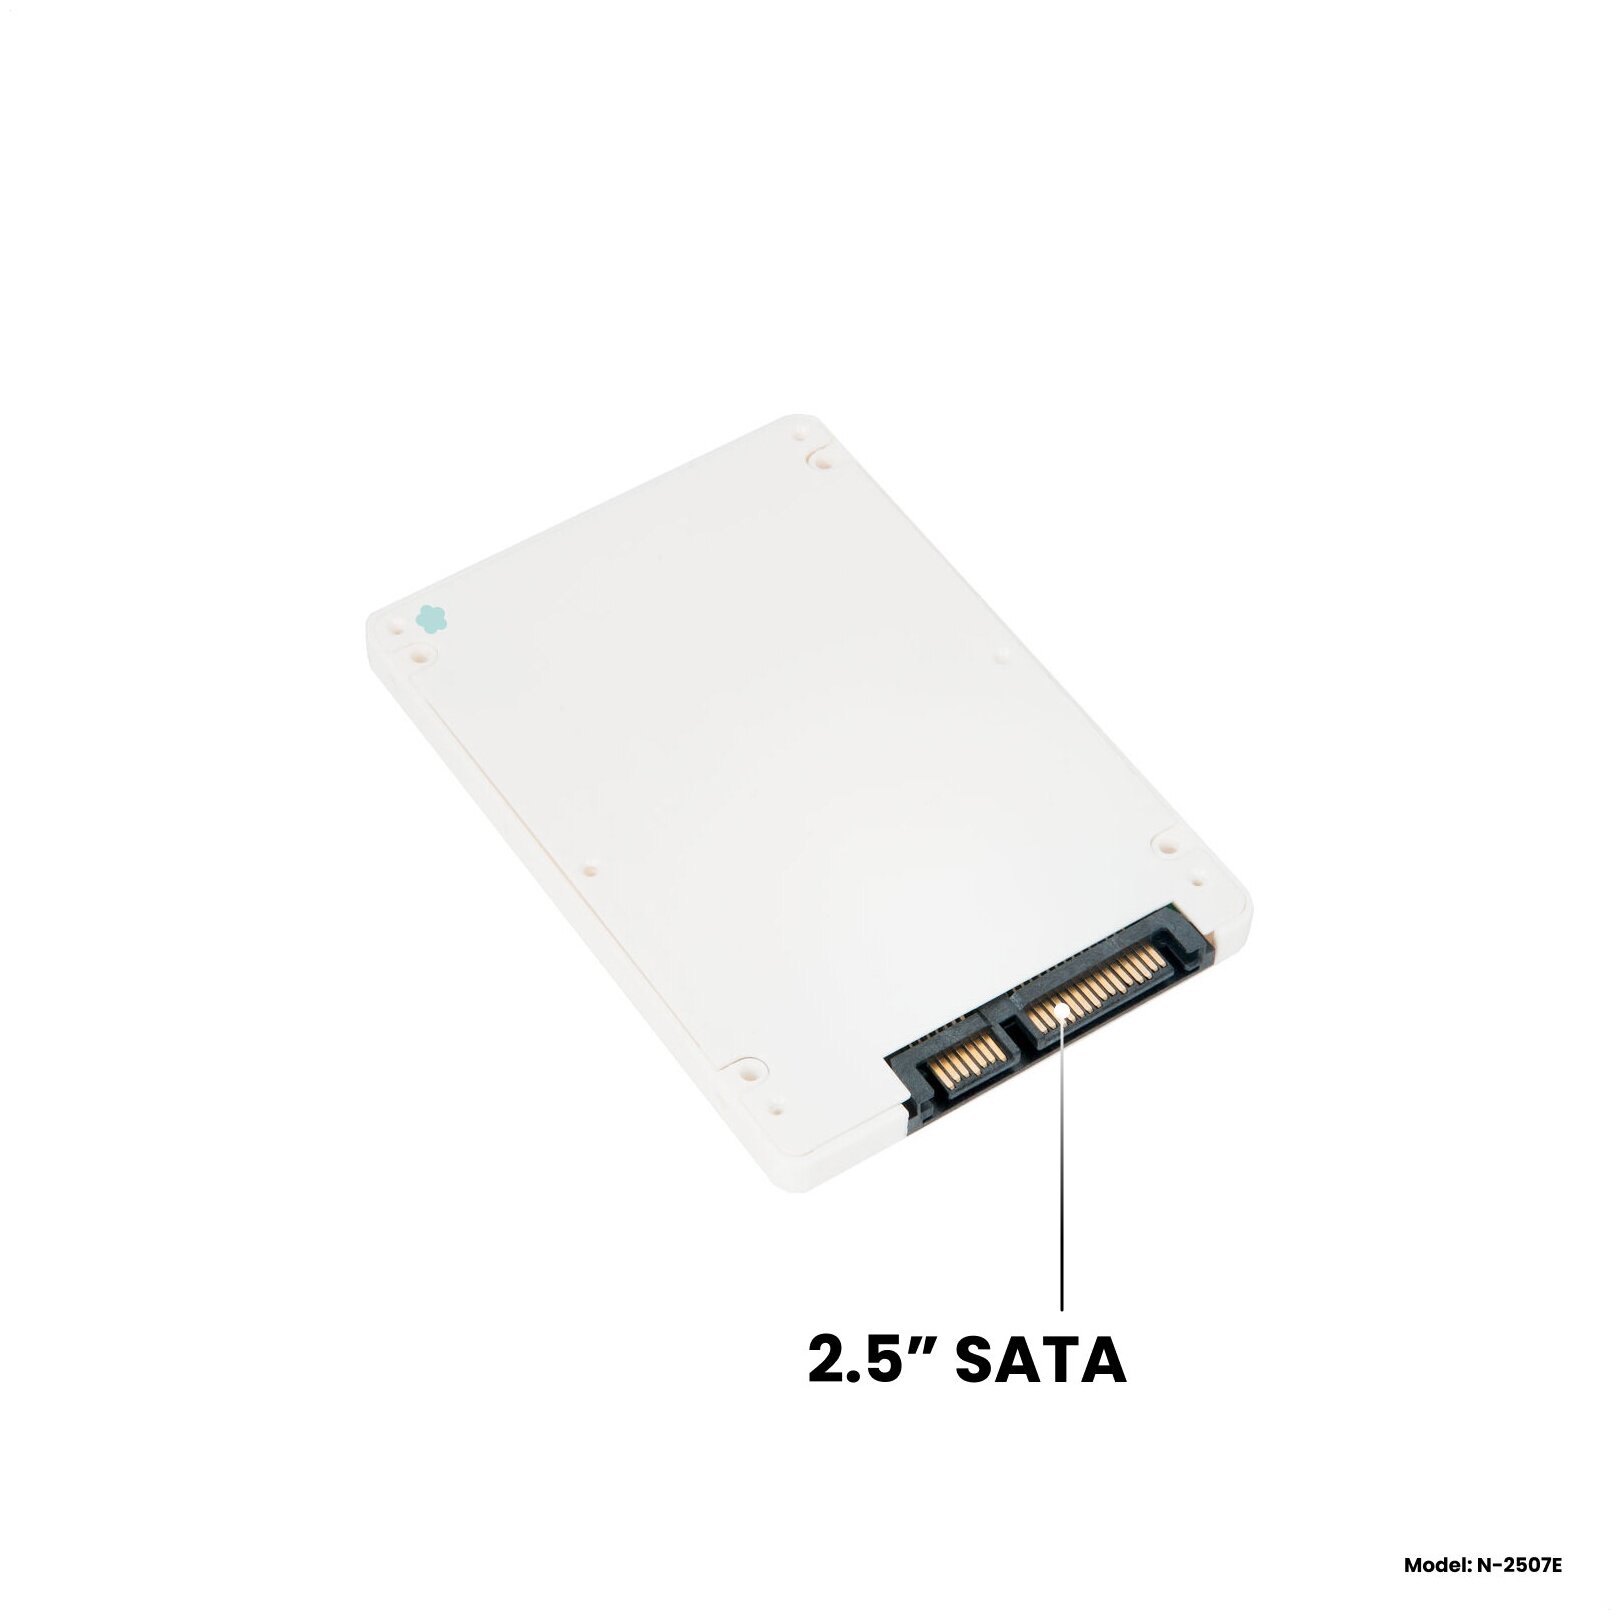 Адаптер-переходник для установки SSD M.2 SATA (B+M key) в пластиковый белый корпус (бокс) 2.5" SATA NFHK N-2507E